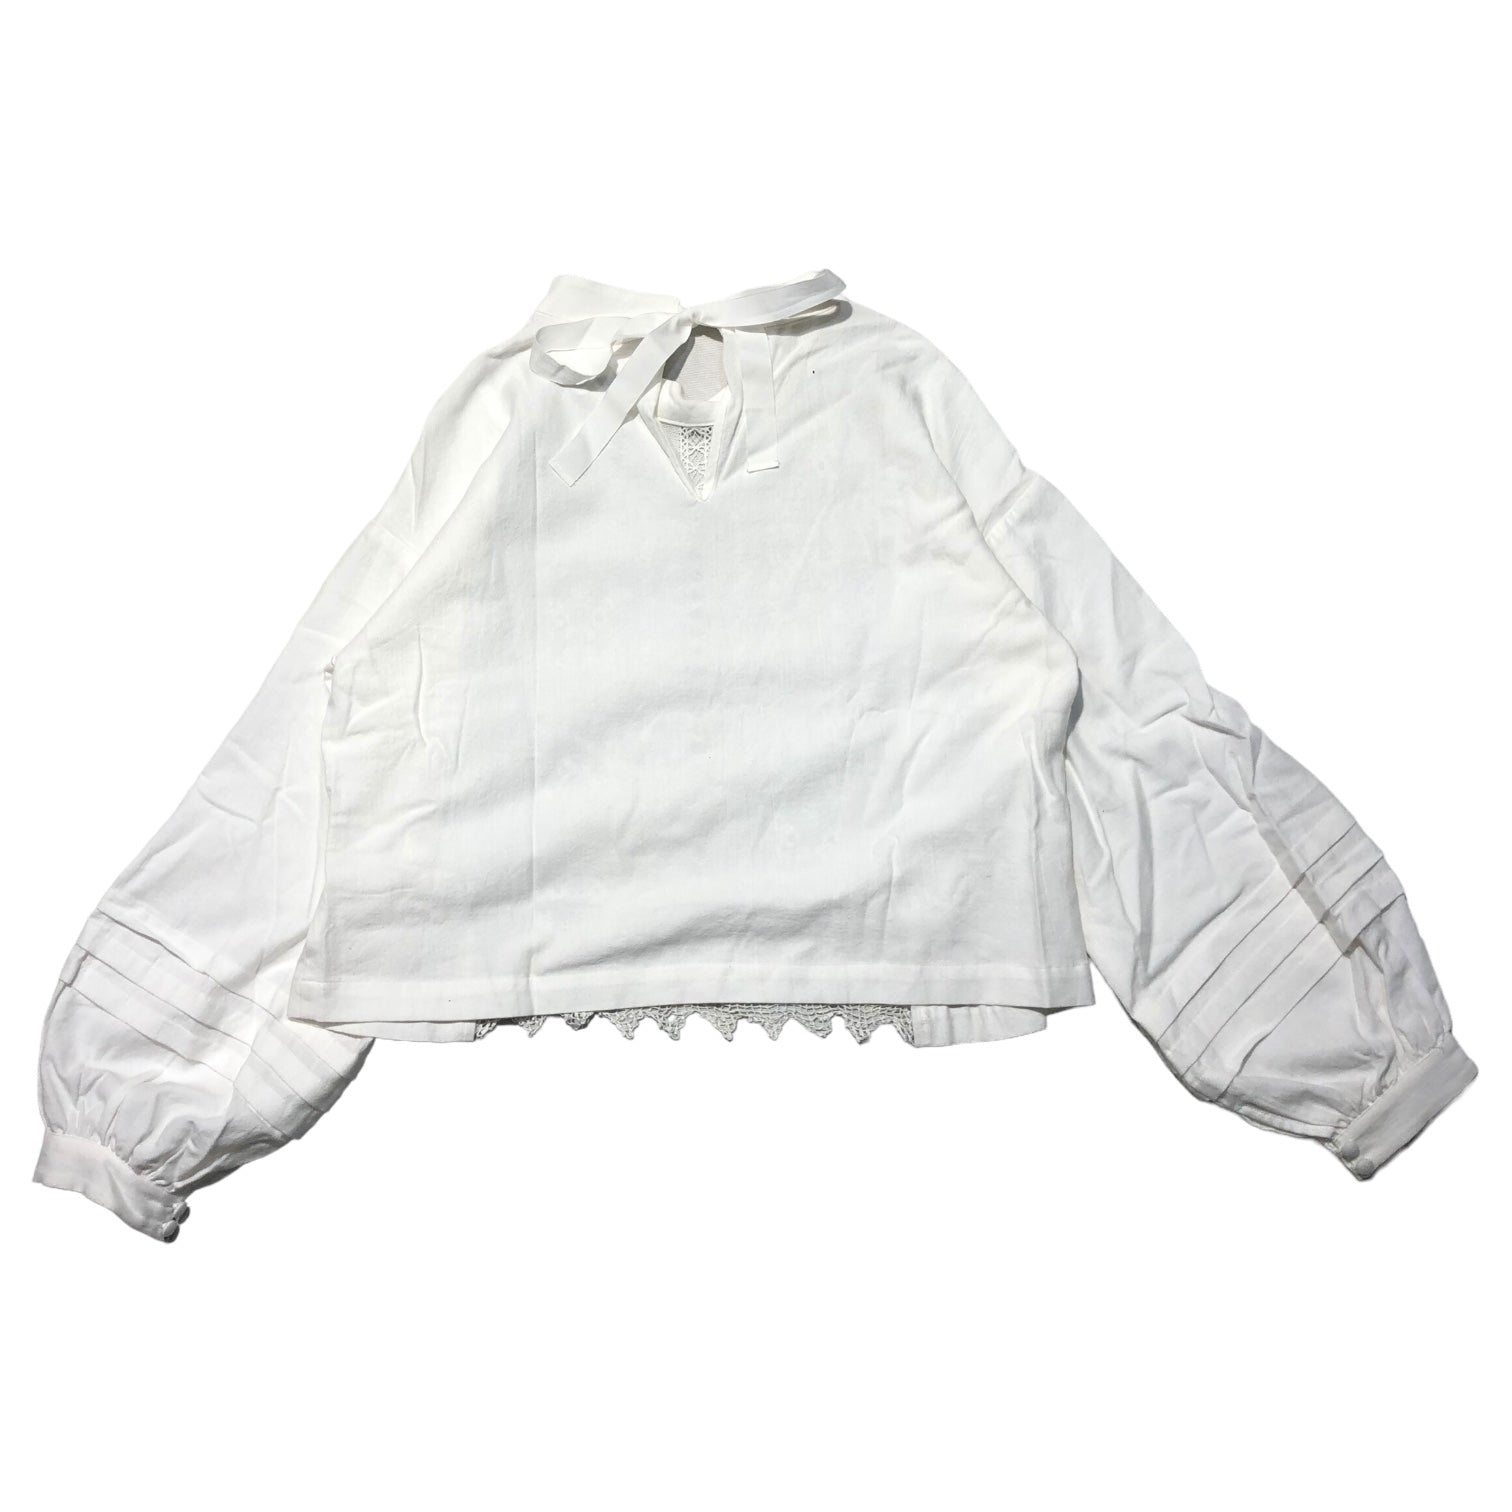 nesessaire(ネセセア) AOPOI remake blouse アオポイ リメイク ブラウス 18-3-3001 FREE ホワイト 参考定価25,300円(税込)